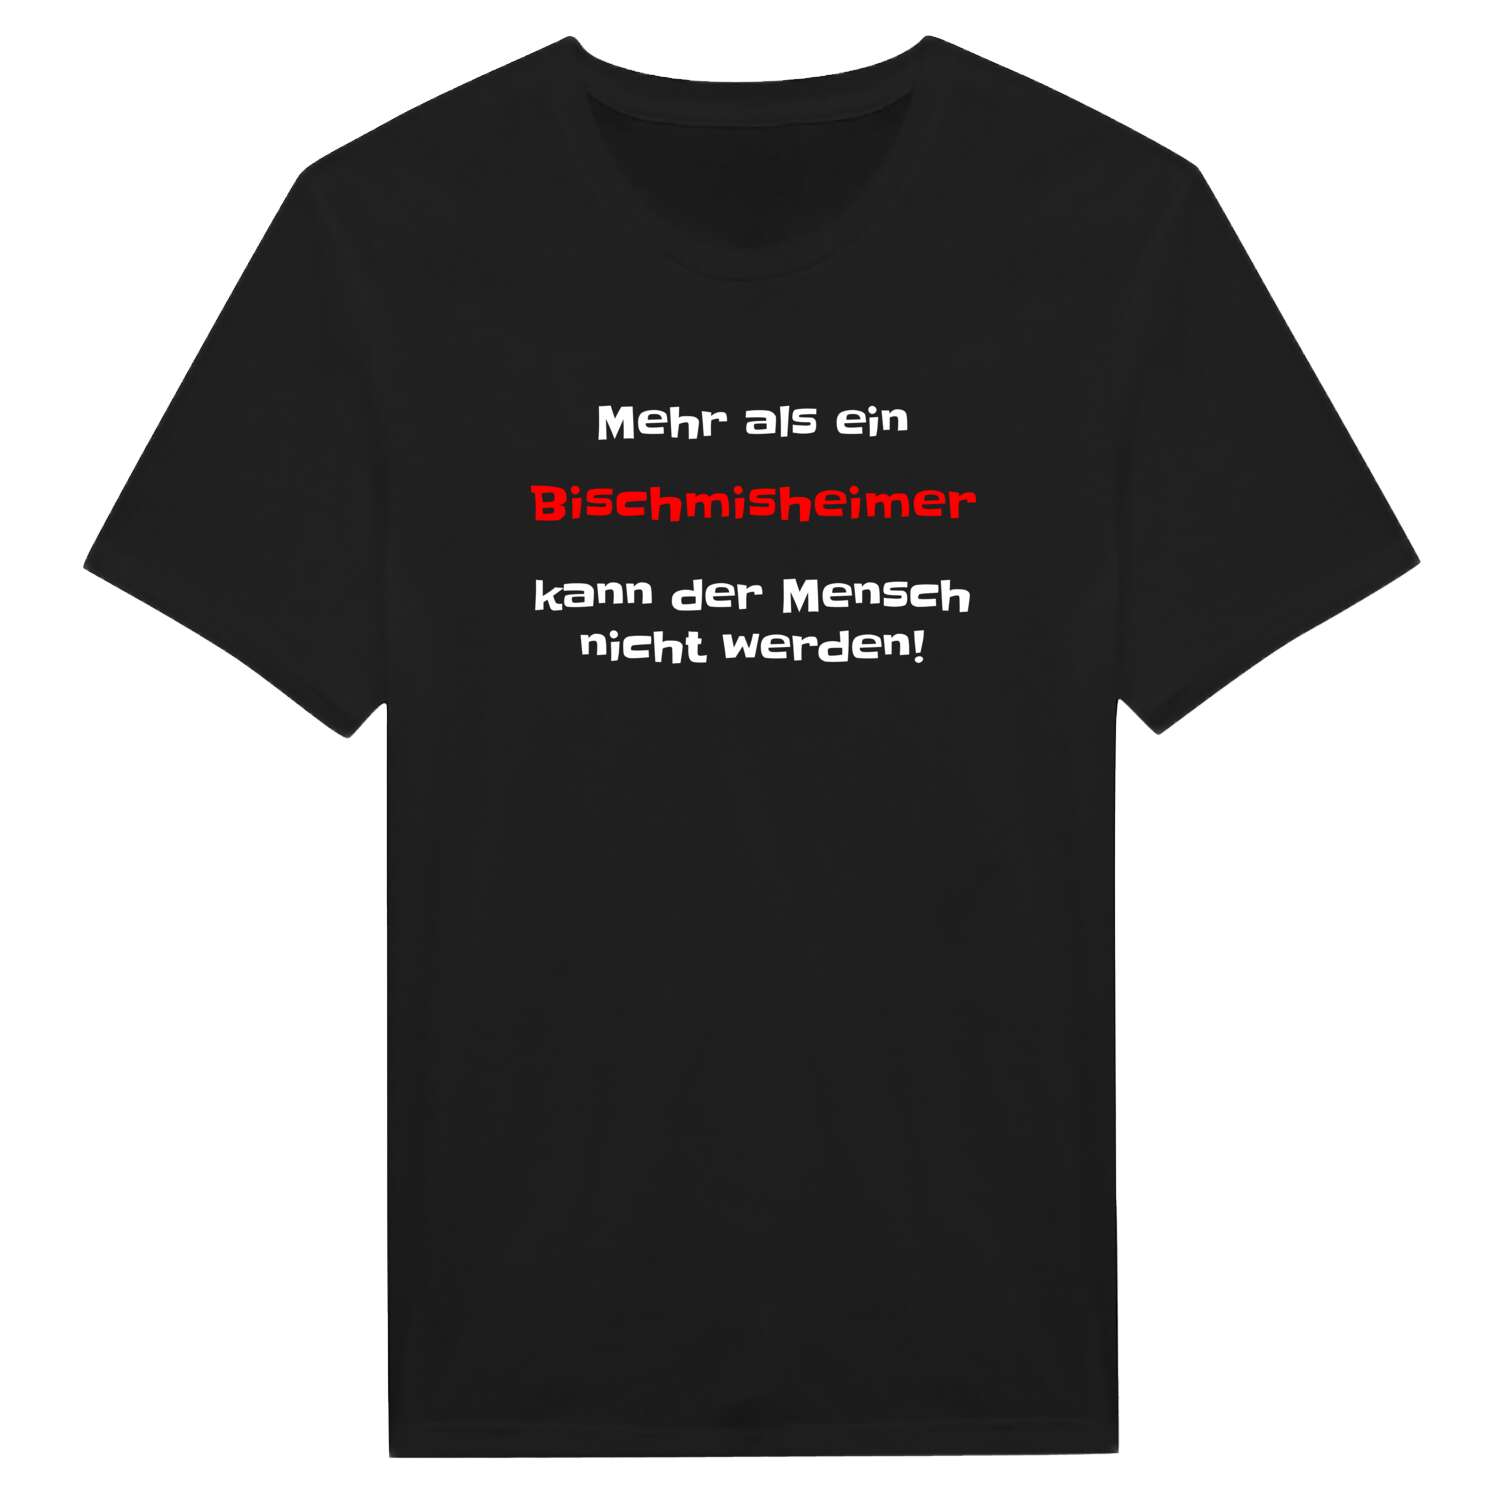 Bischmisheim T-Shirt »Mehr als ein«